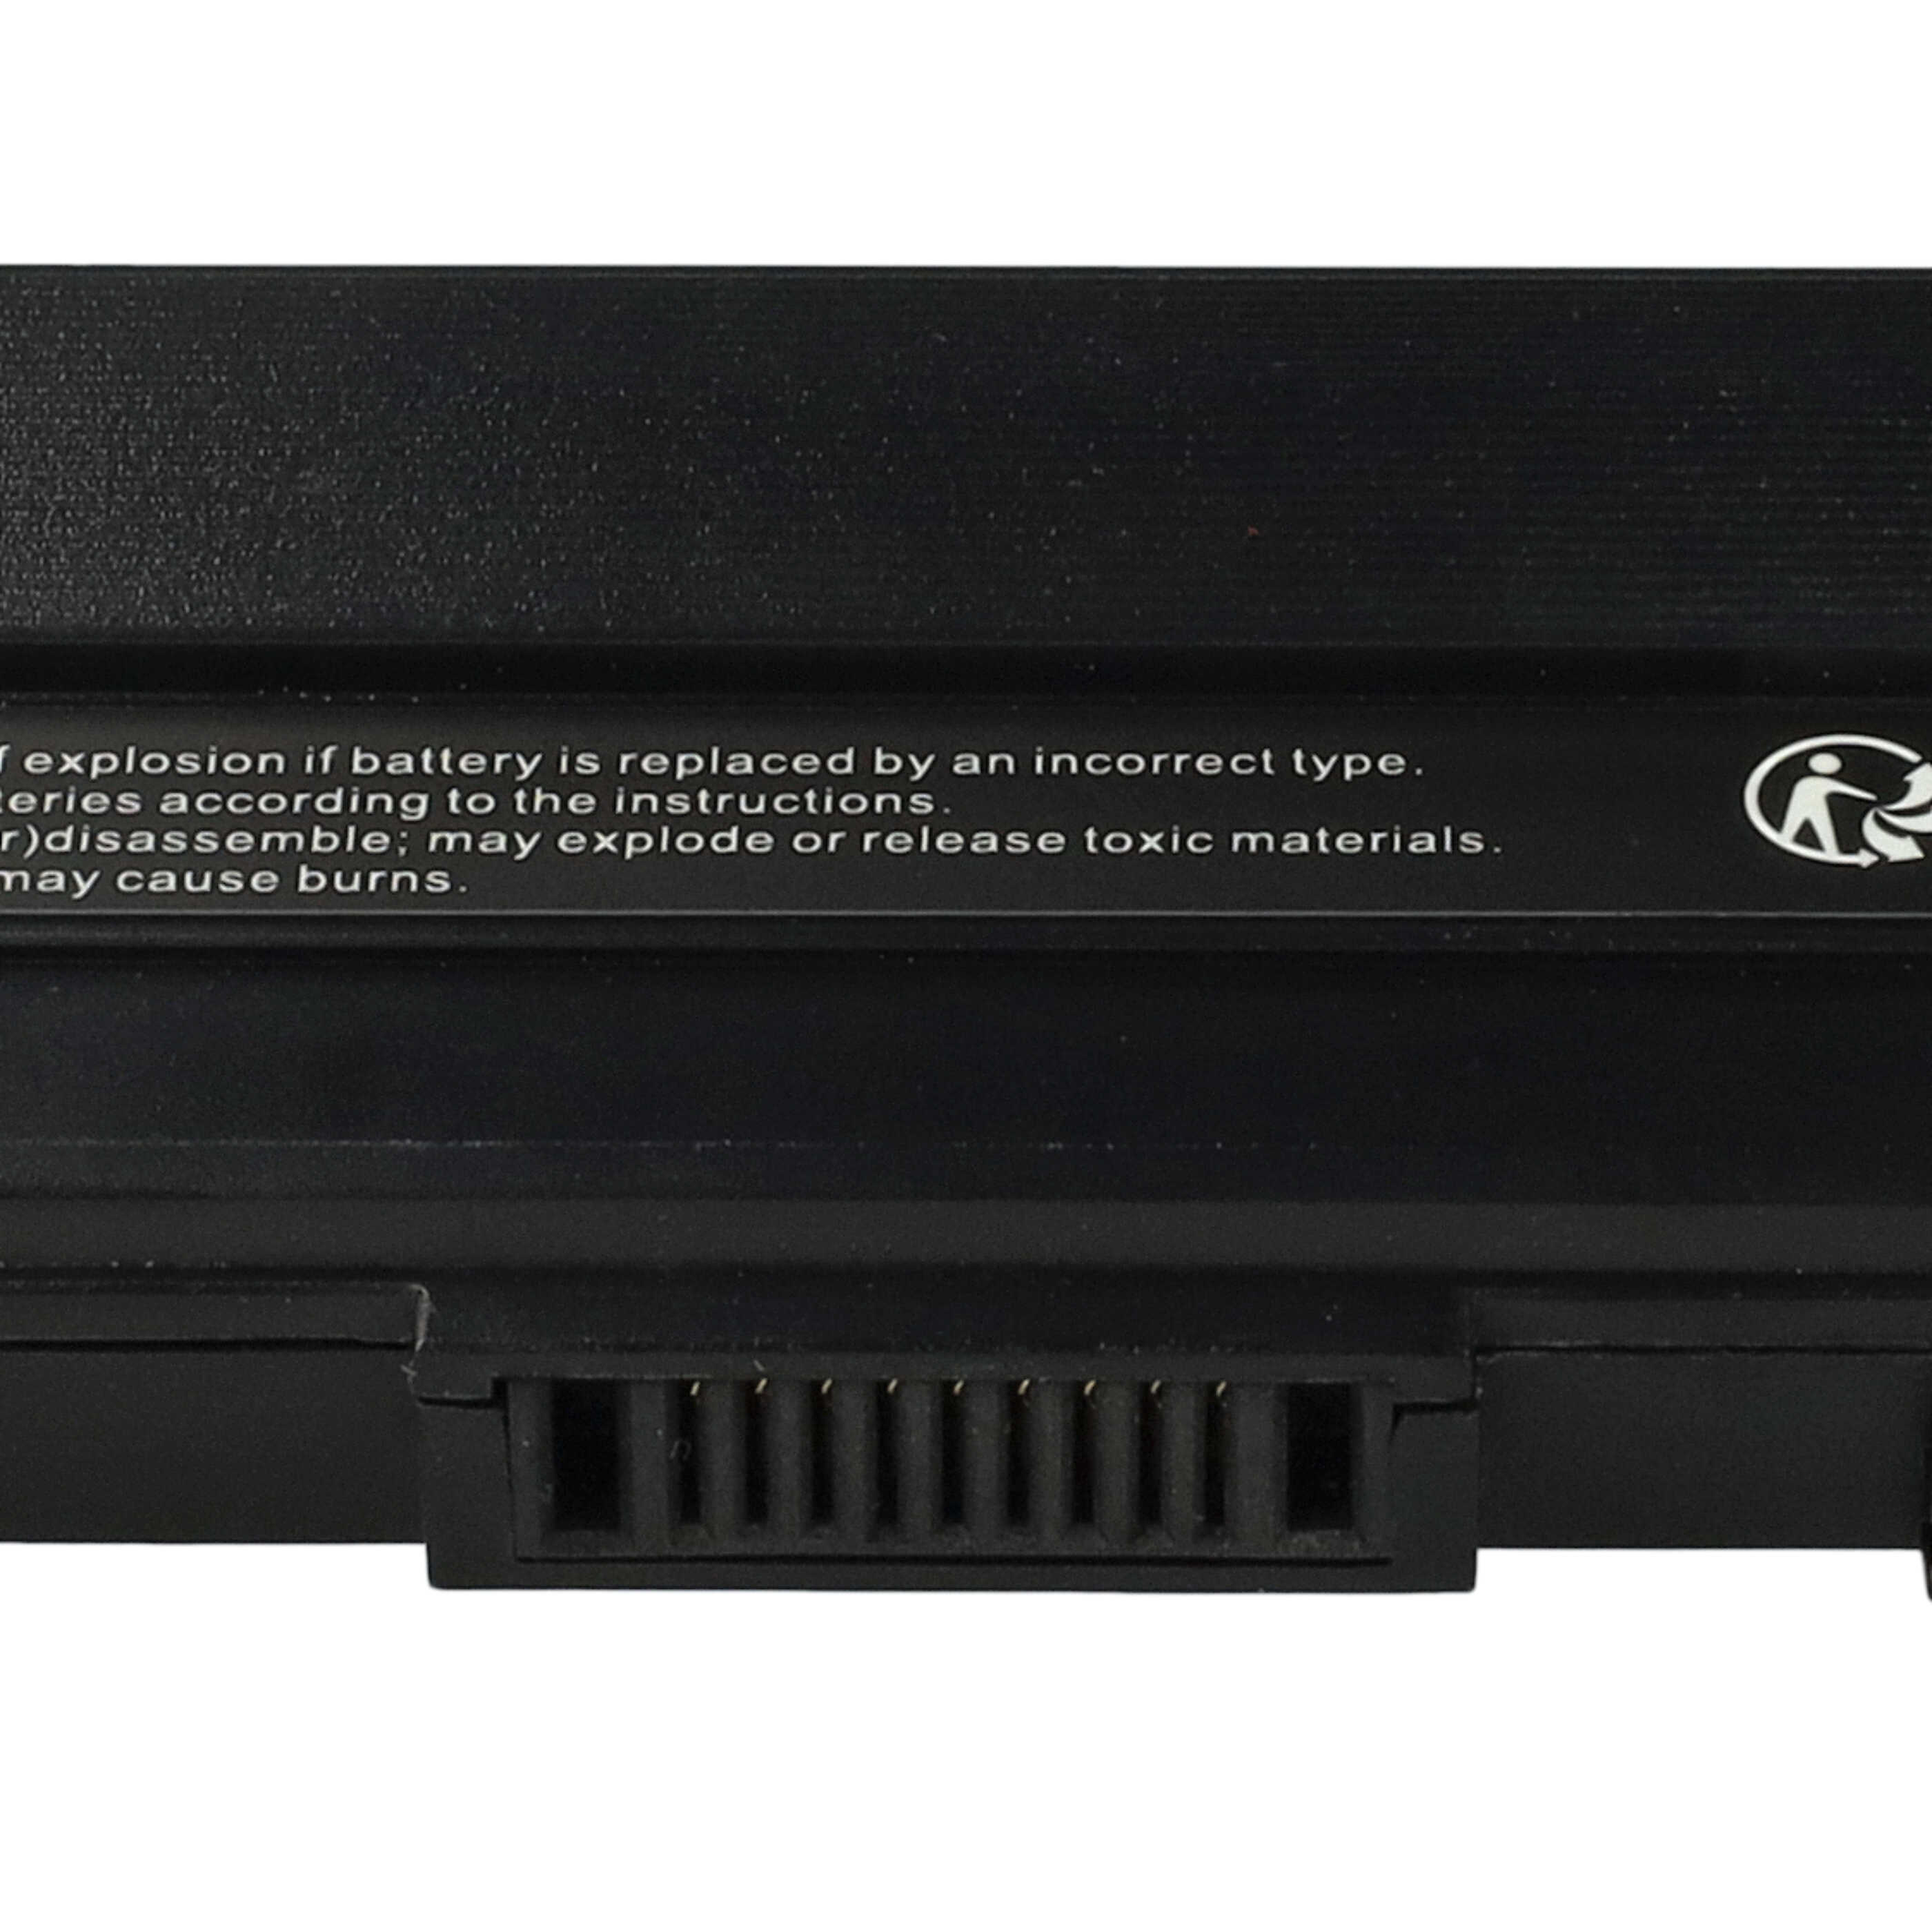 Batterie remplace Asus A42-UL50, A42-UL30, A31-UL30 pour ordinateur portable - 6600mAh 14,8V Li-ion, noir